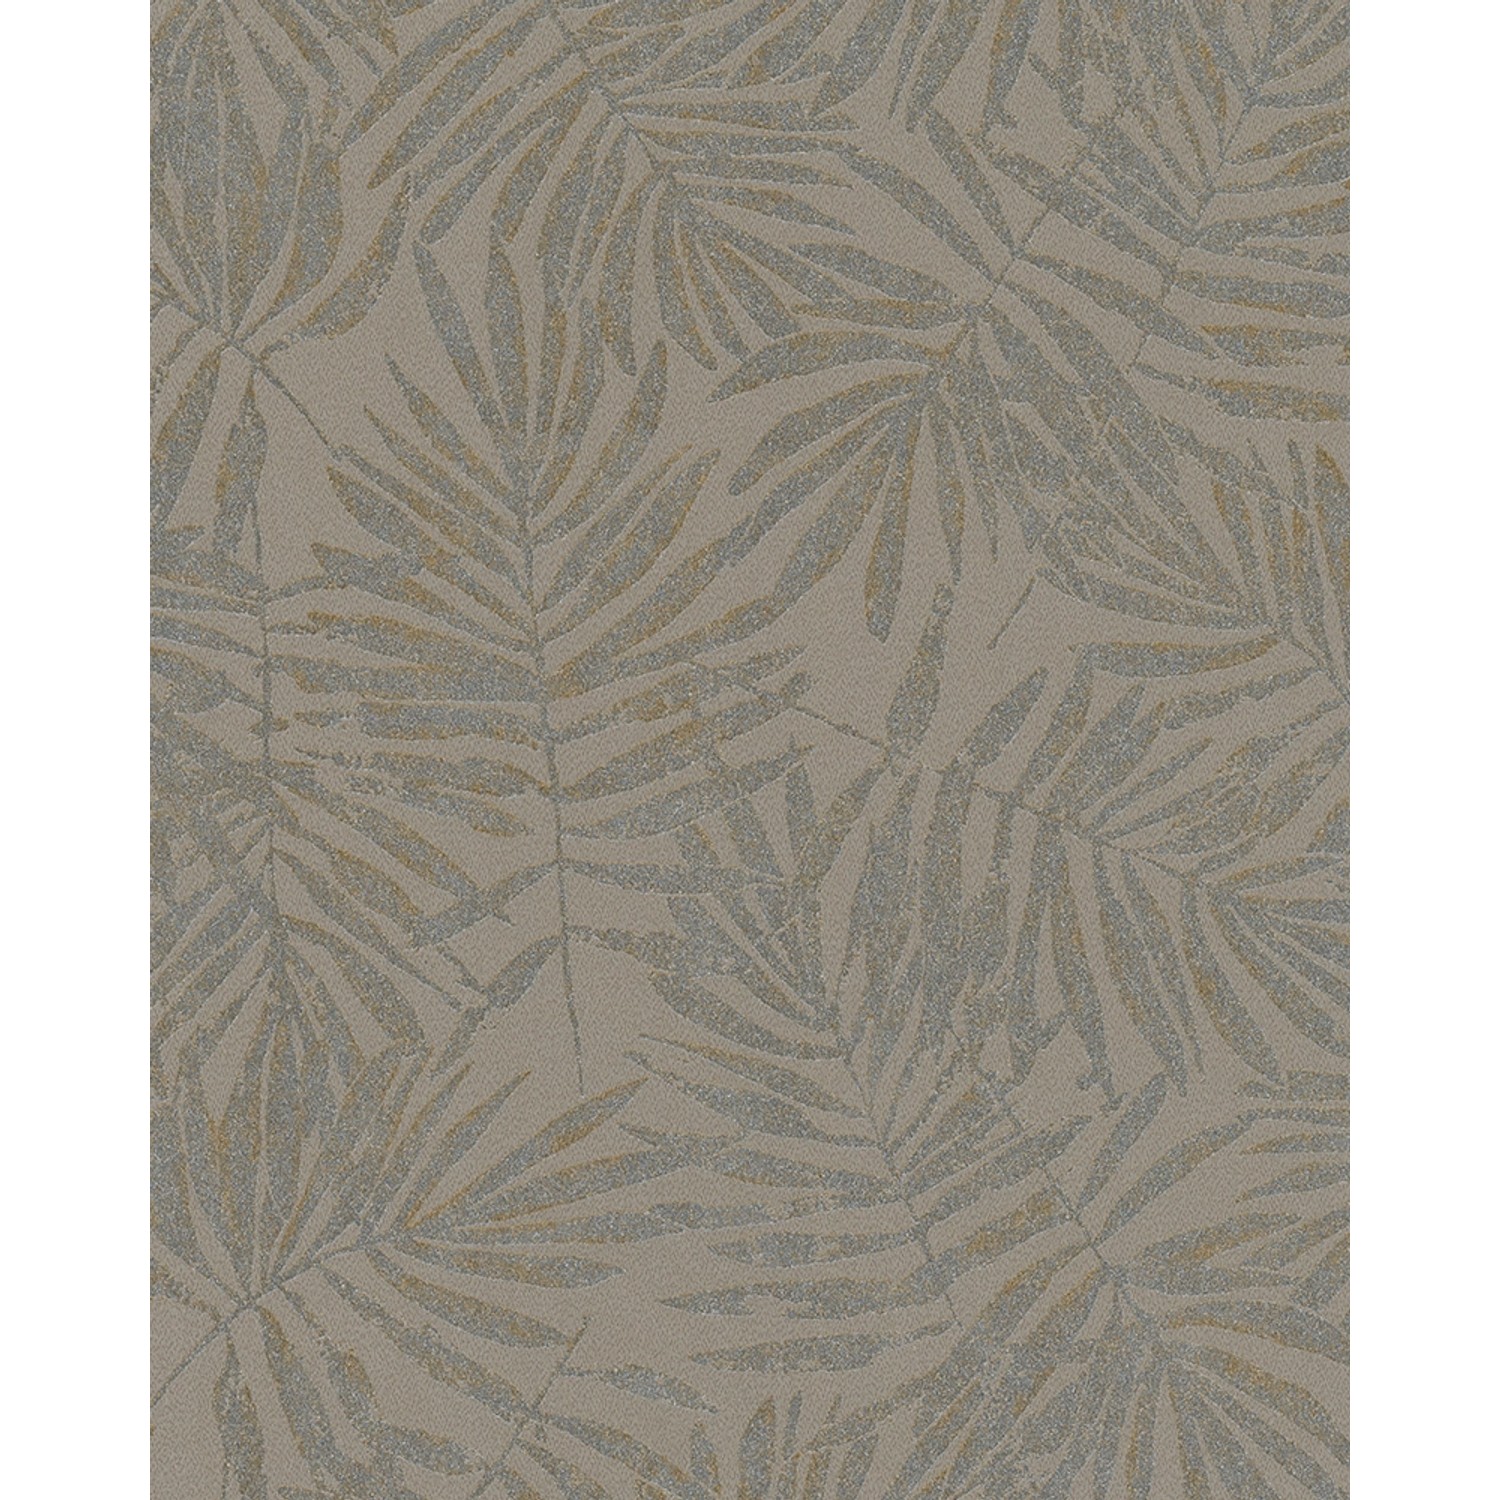 Marburg Vliestapete Floral Pflanze Braun-Silber 10,05 m x 0,53 m FSC® von Marburg